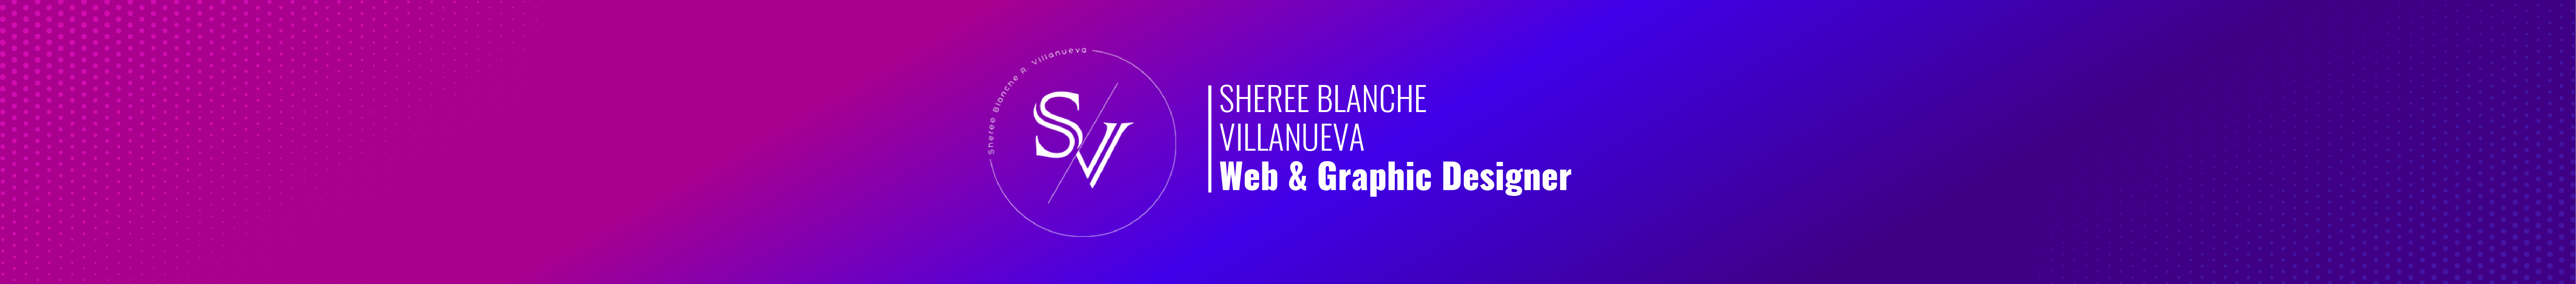 Profil-Banner von Sheree Blanche Villanueva